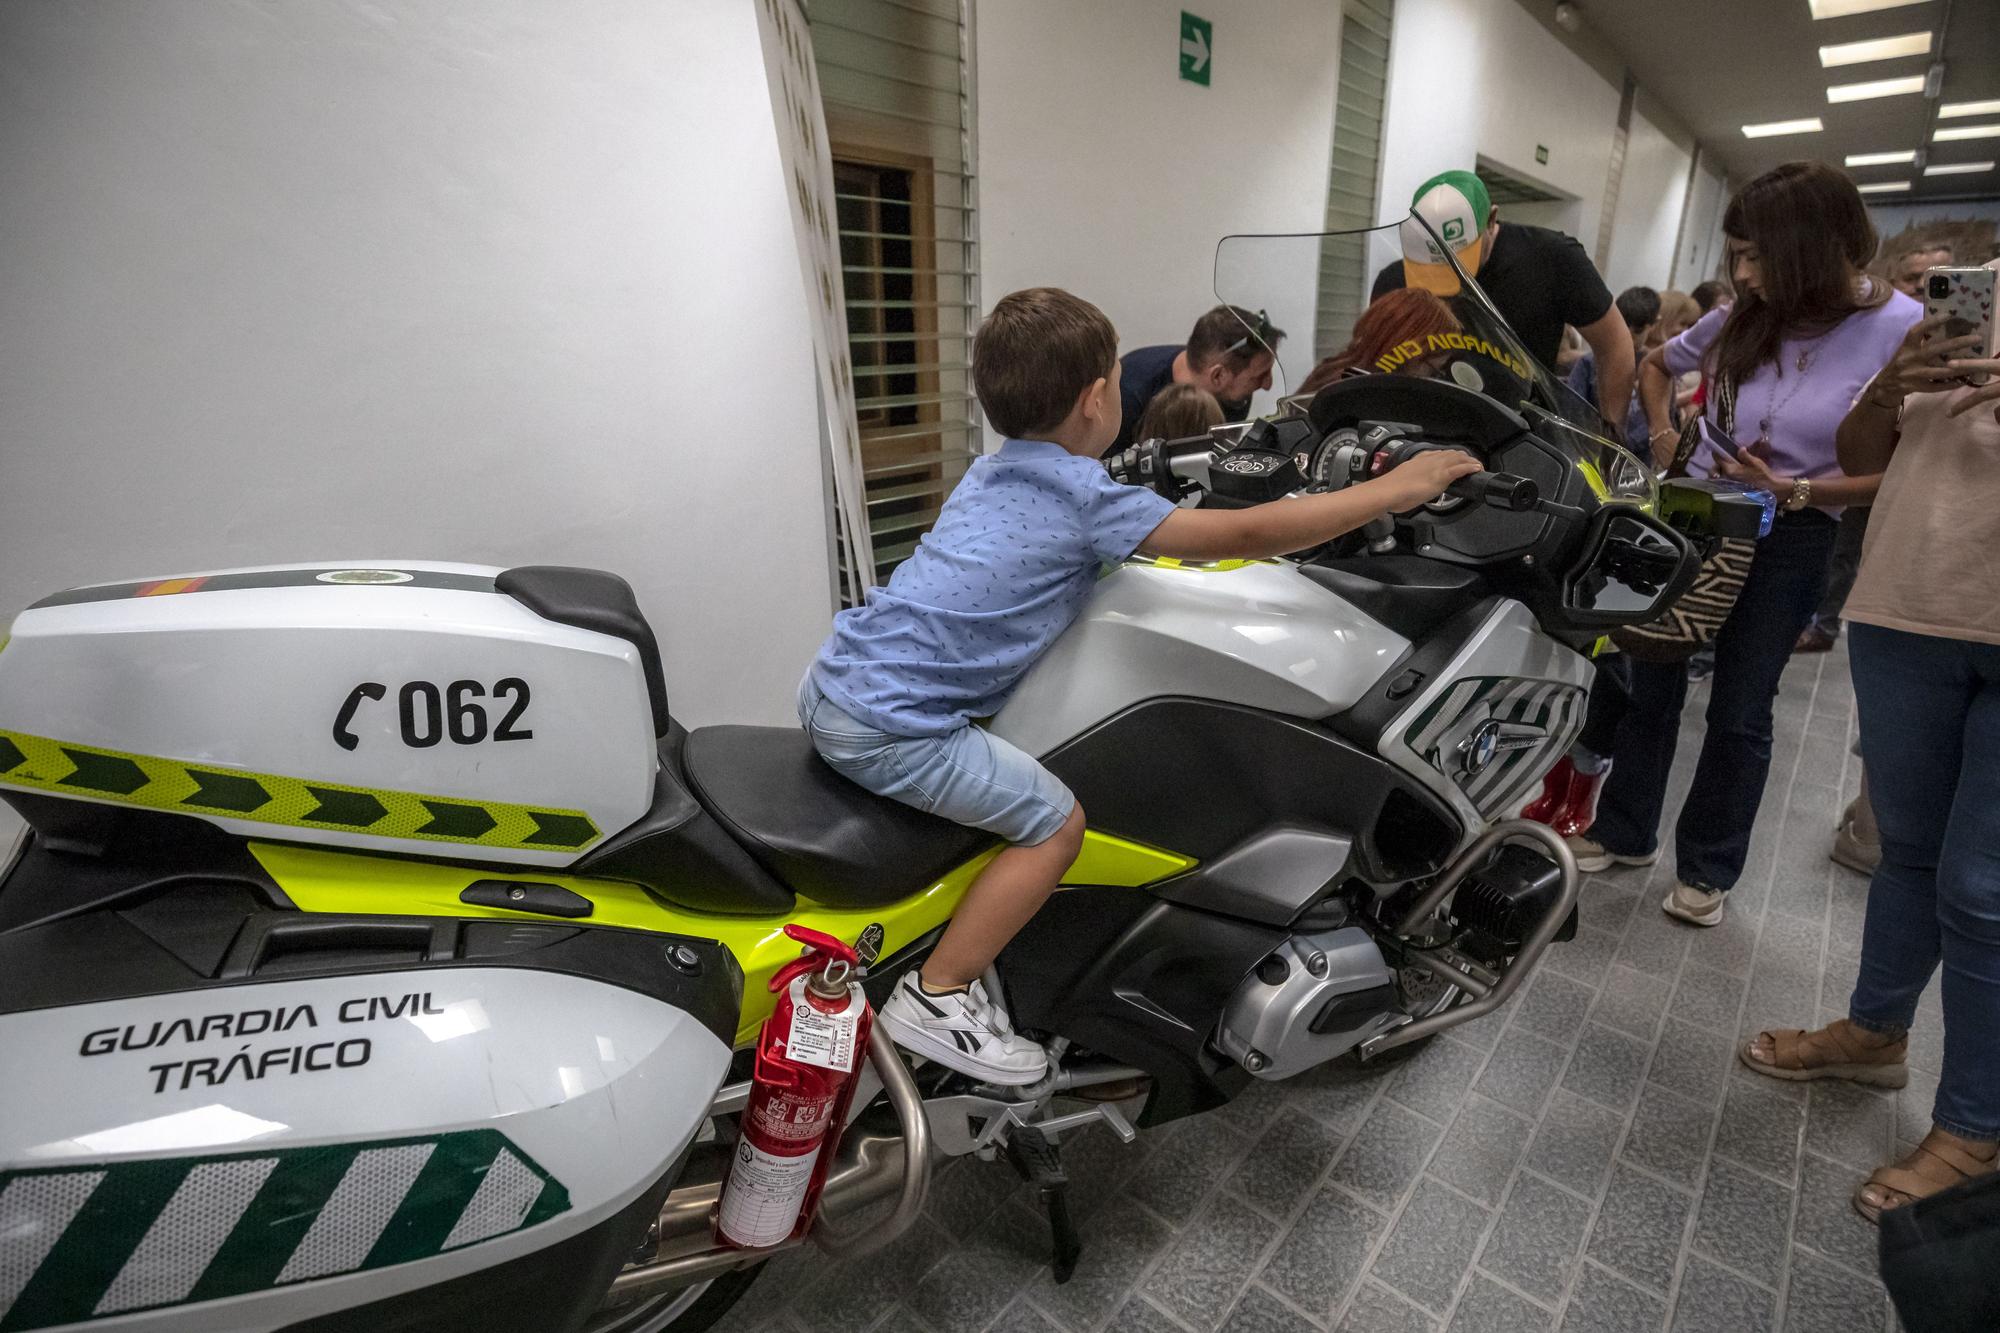 La Guardia Civil de Baleares ha celebrado una jornada de puertas abiertas para conmemorar la patrona